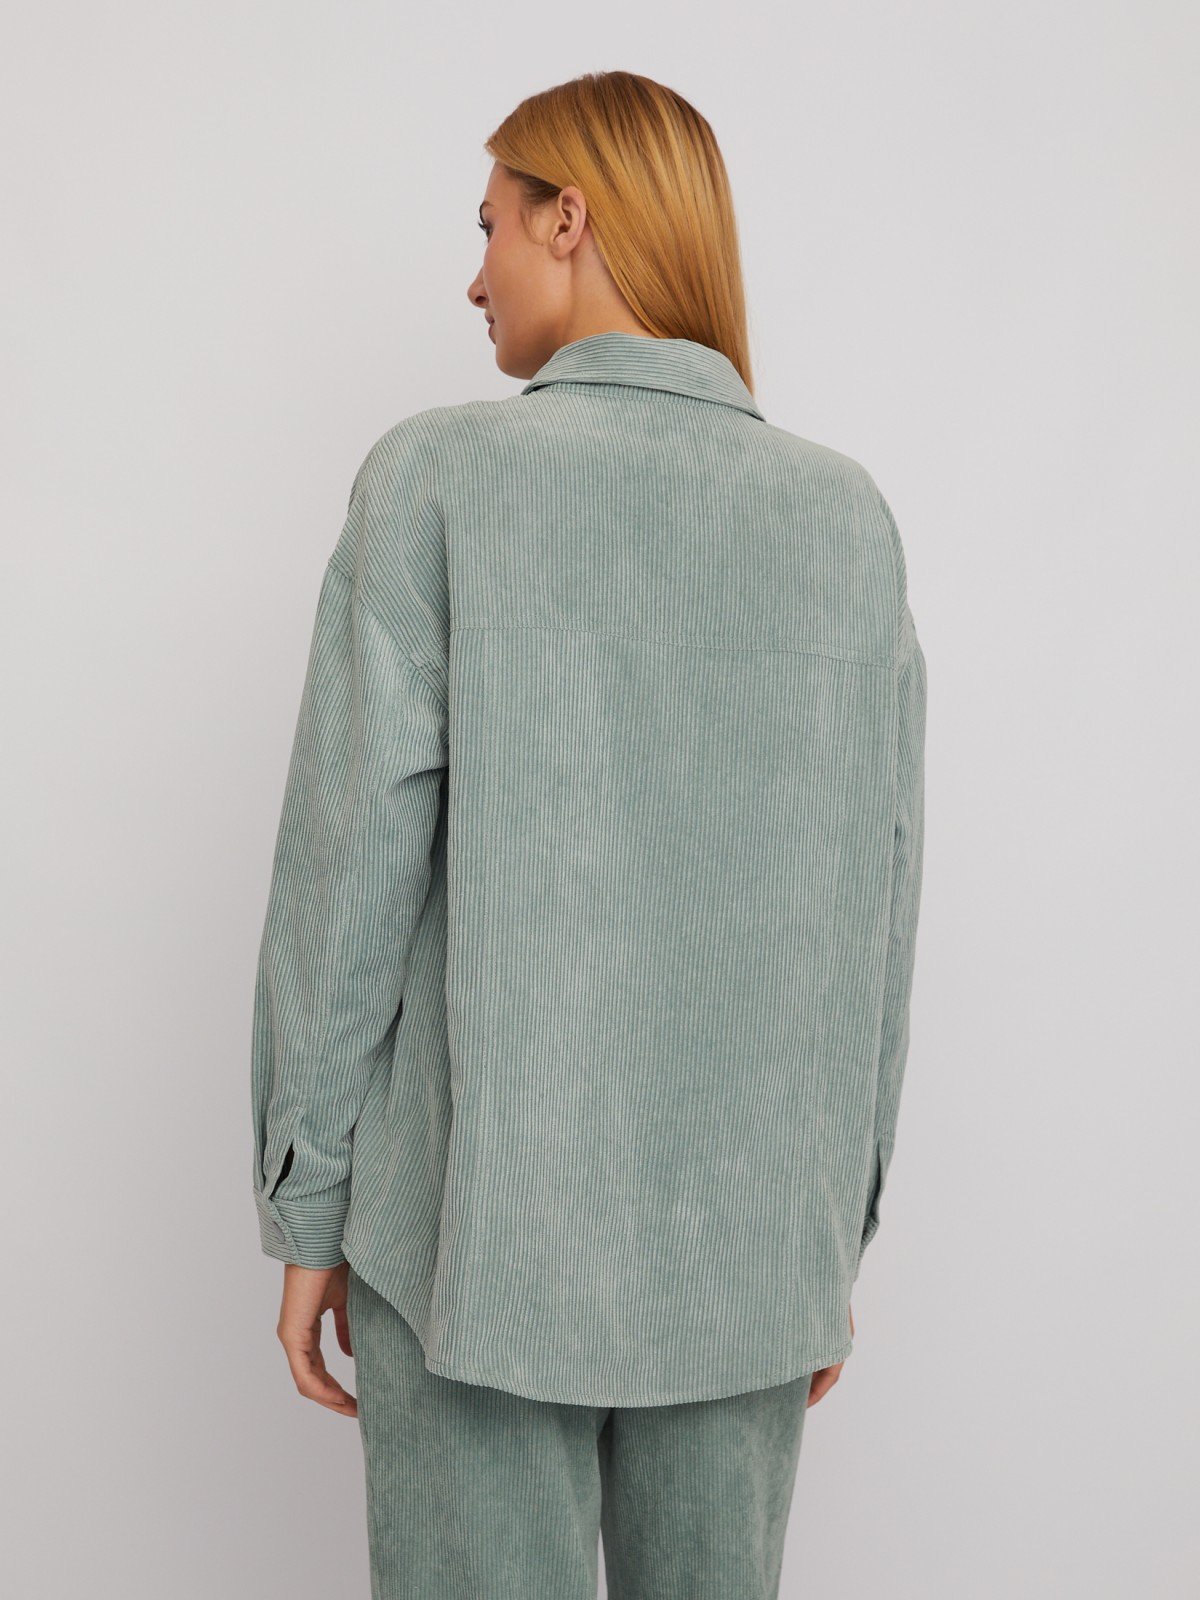 Куртка-рубашка объёмного силуэта из вельвета zolla 02412540L023, цвет светло-зеленый, размер XS - фото 5